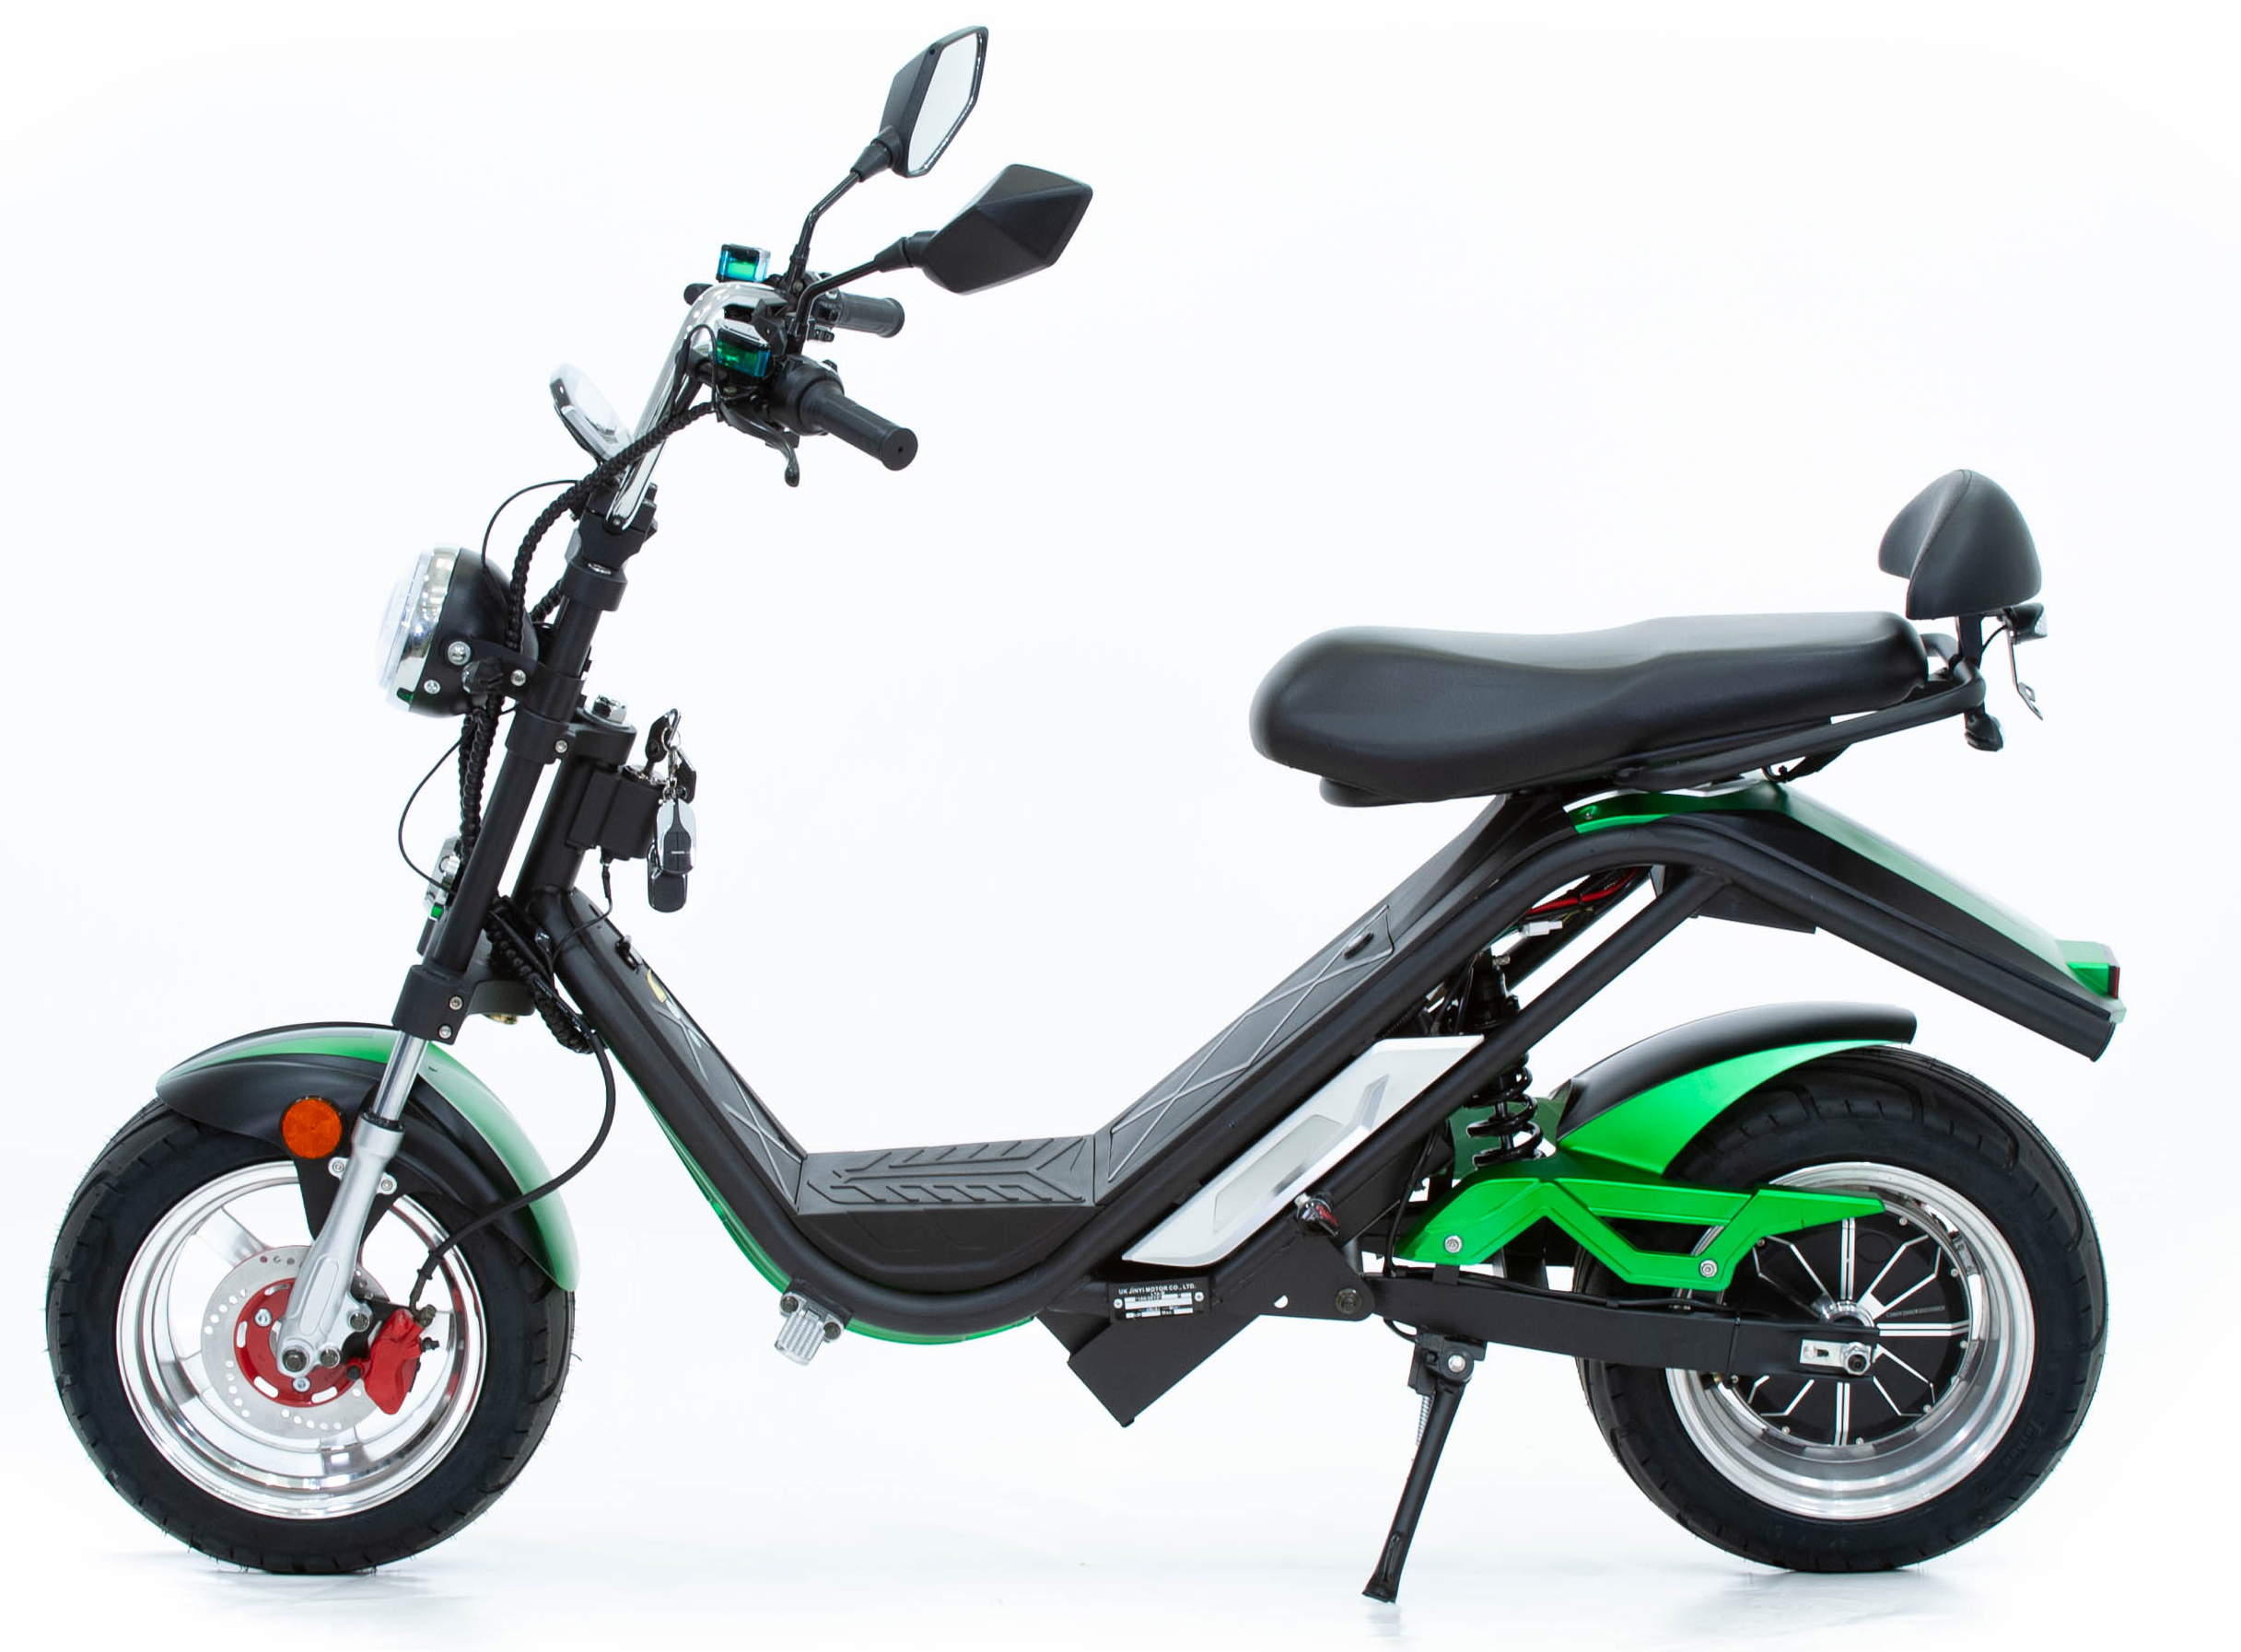 Alarme pour scooter de plus de 50cc - Feu Vert